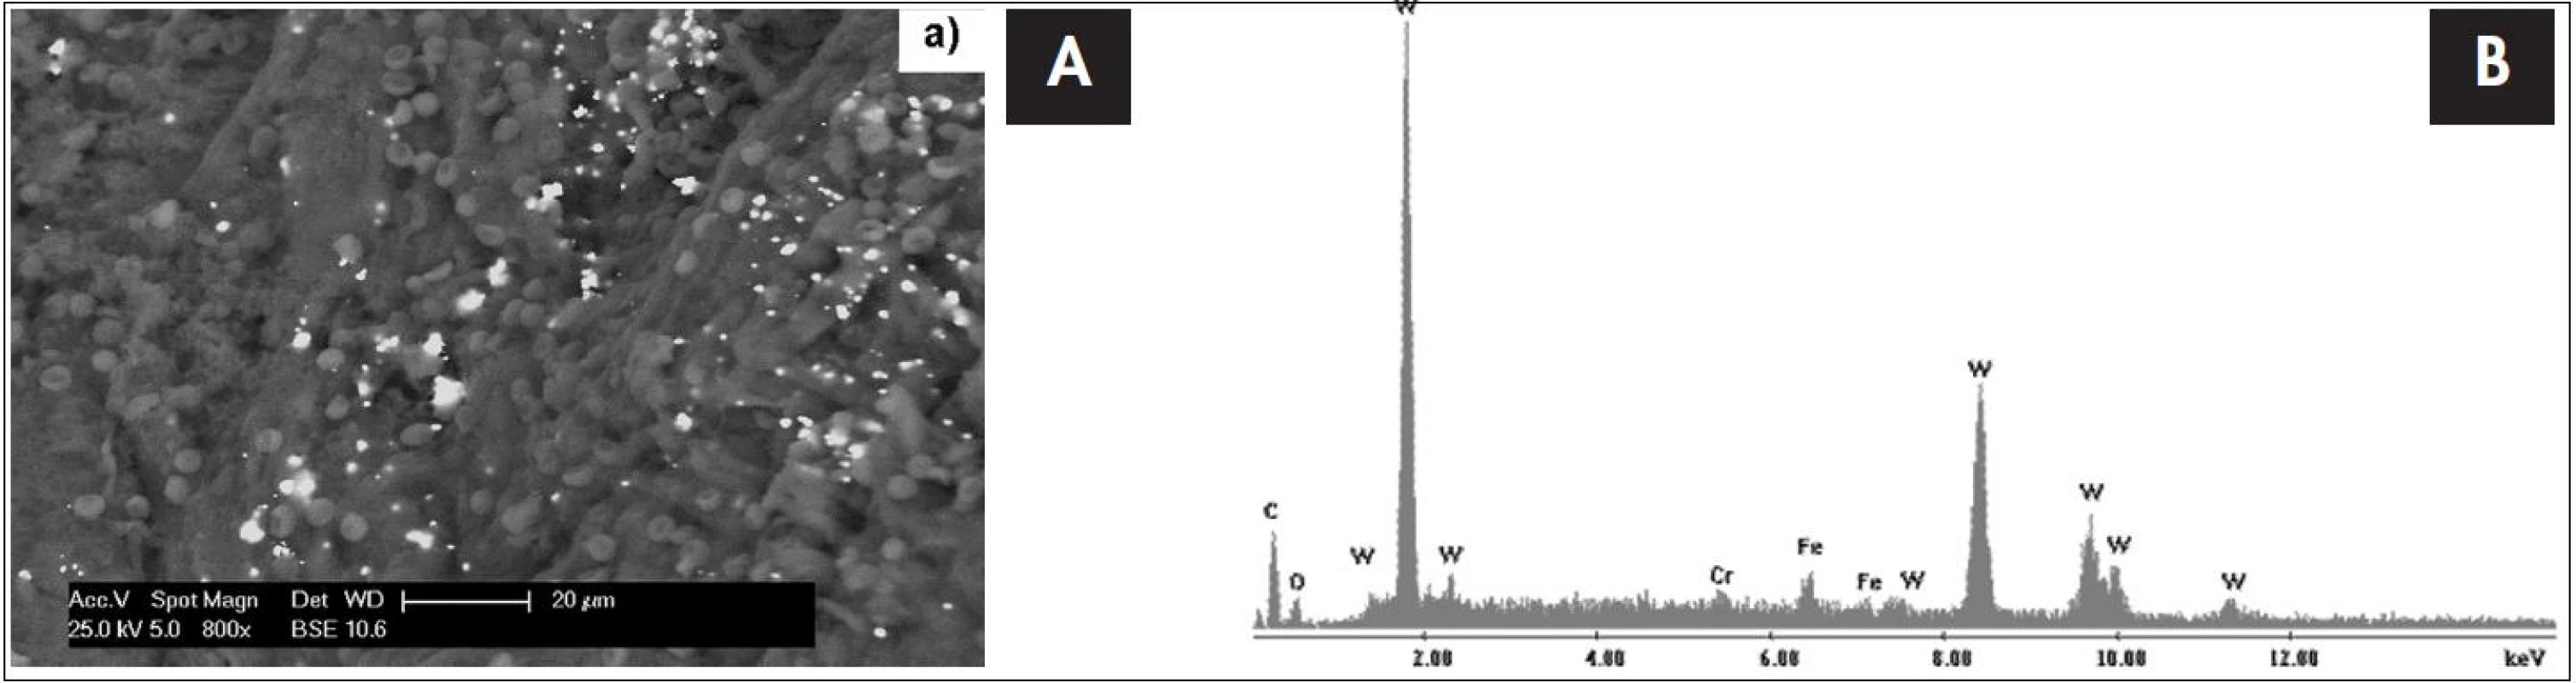 Snímek tkáně tonzily 4 letého dítěte s chronickou tonzilitidou ze skenovacího elektronového mikroskopu s EDS detektorem s odpovídajícím EDS spektrem, který je výsledkem bodové analýzy. Píky označené písmenem W dokazují přítomnost wolframu v tonsilární tkáni.